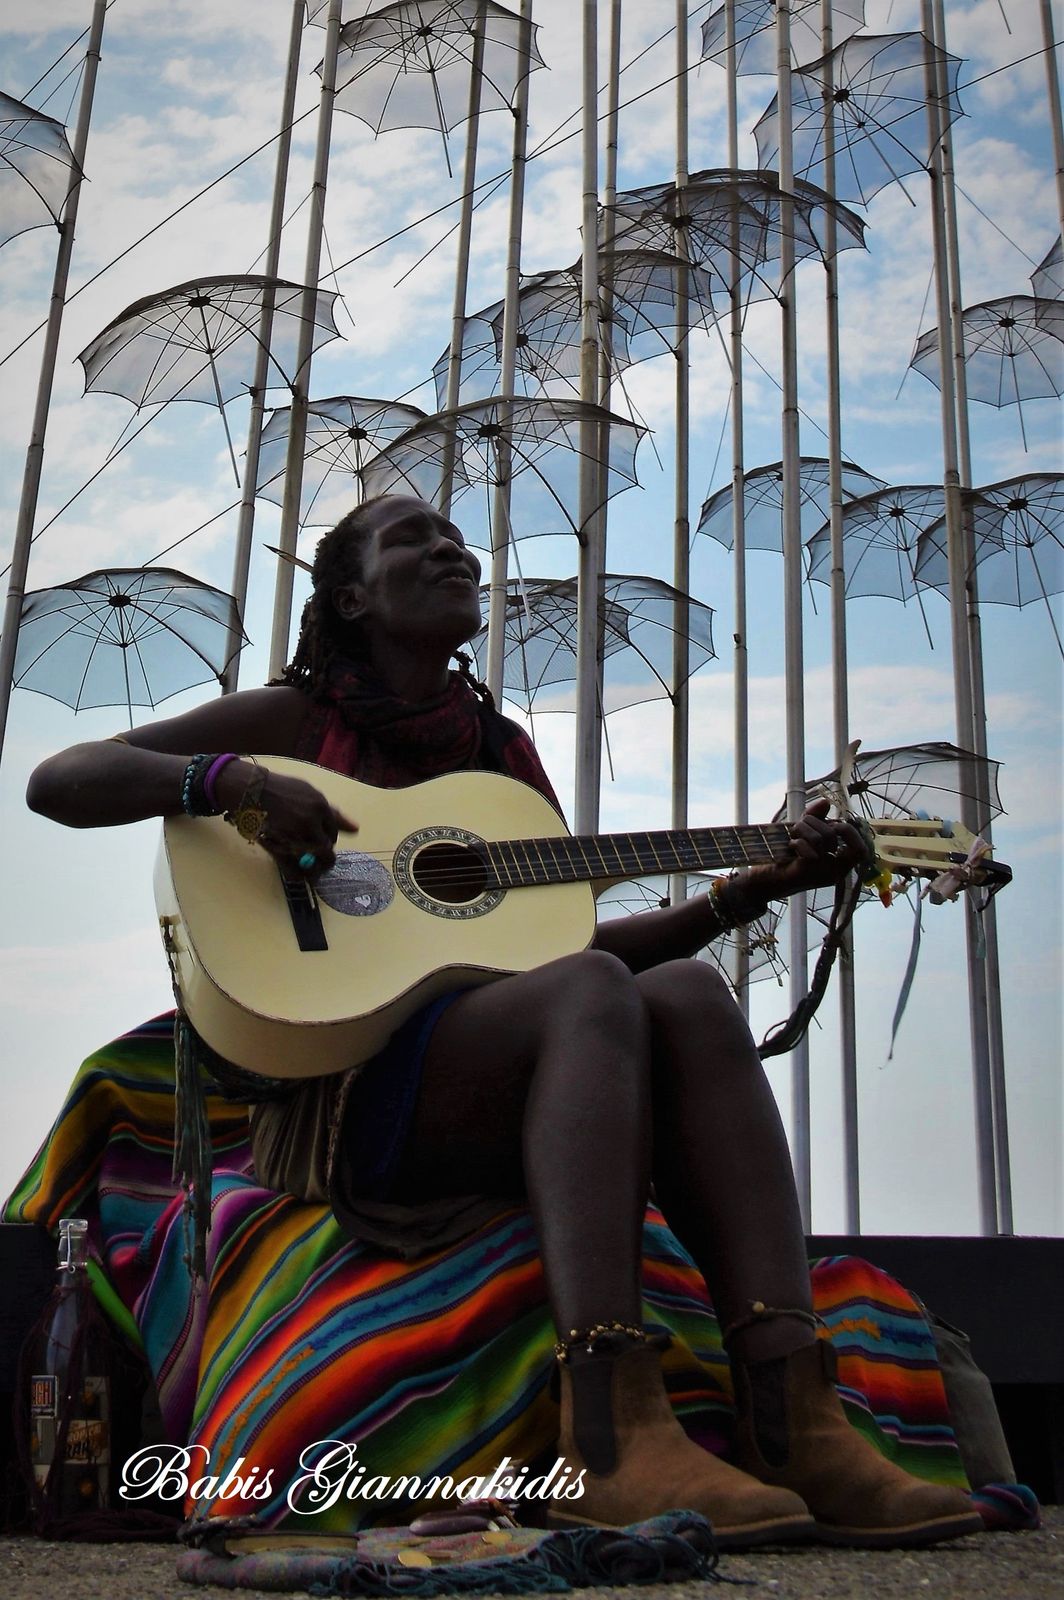 Κοπέλα παιζει κιθάρα κάτω από το γλυπτό Ομπρέλλες του Ζογγολόπουλου